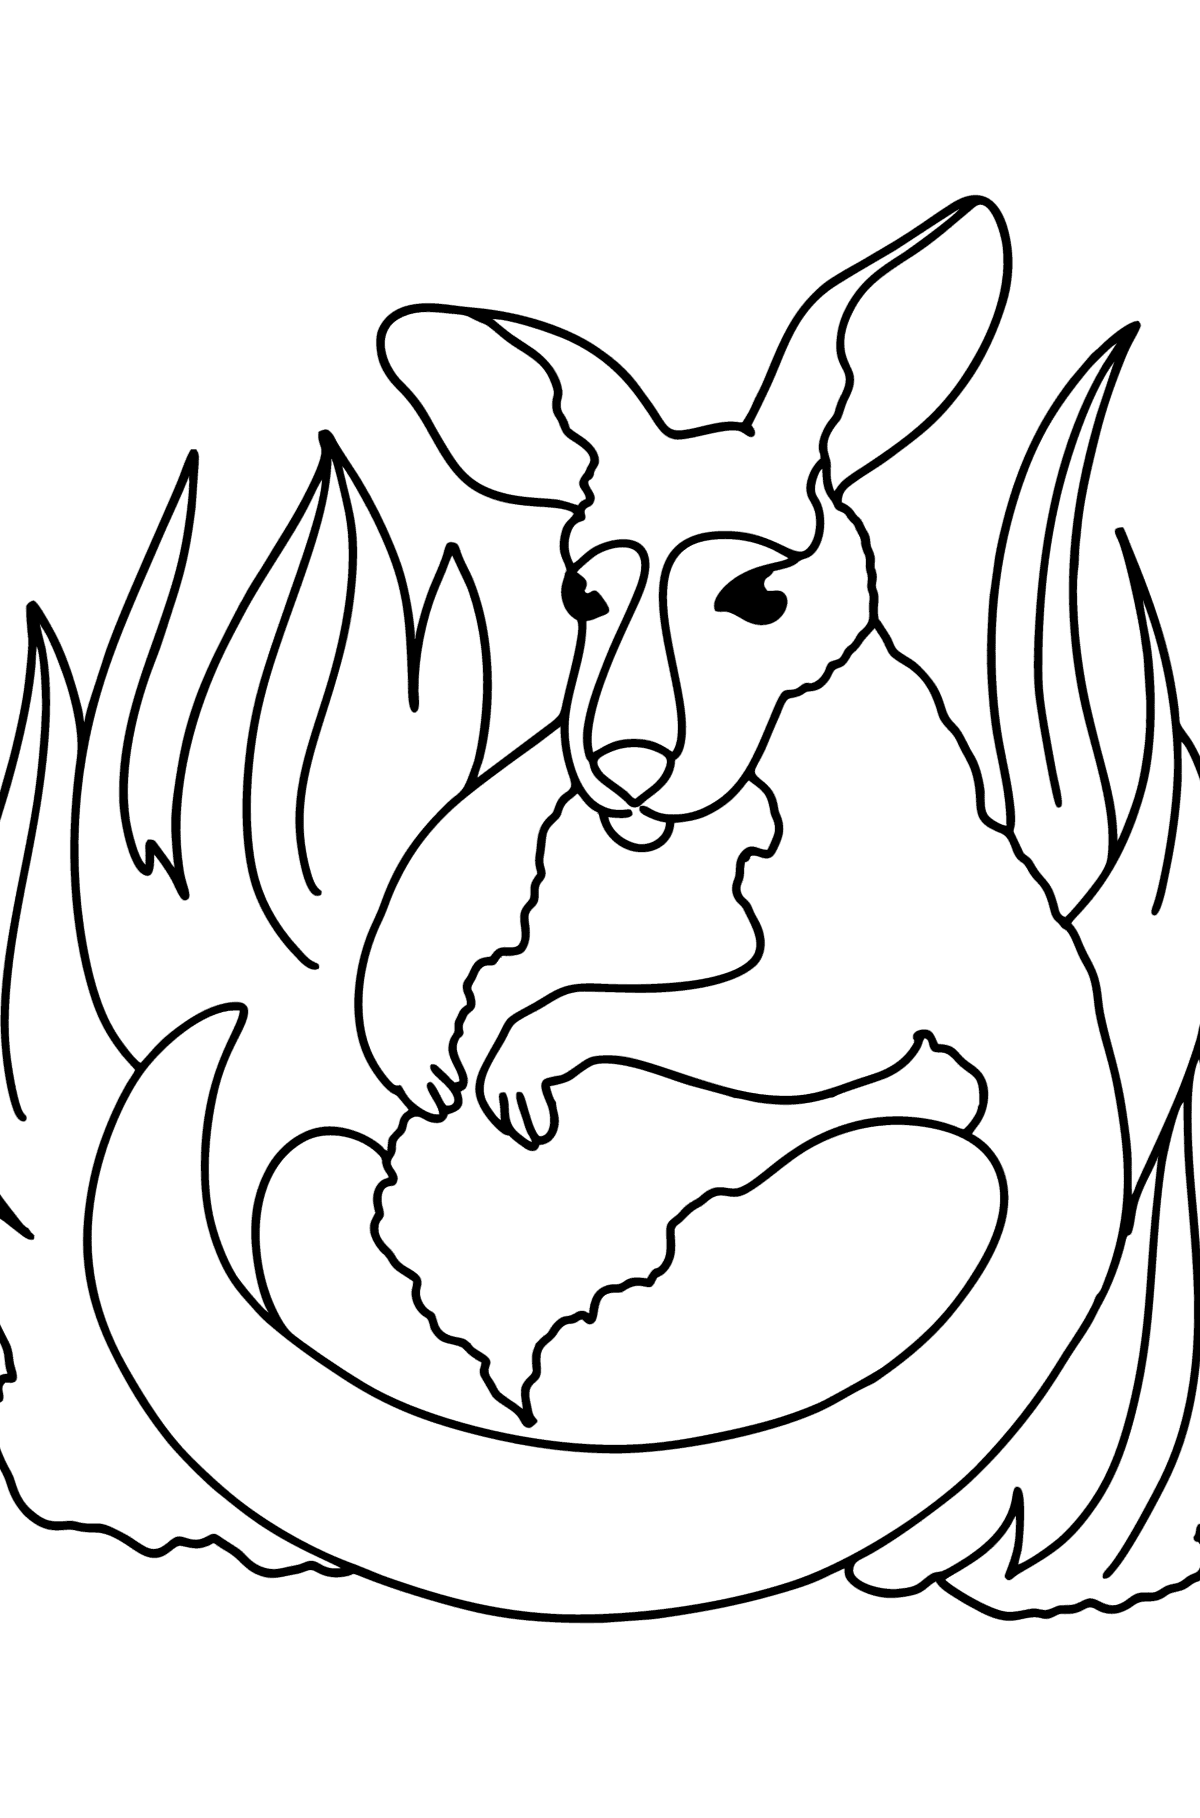 Desenho de Adorável bebê canguru para colorir - Imagens para Colorir para Crianças